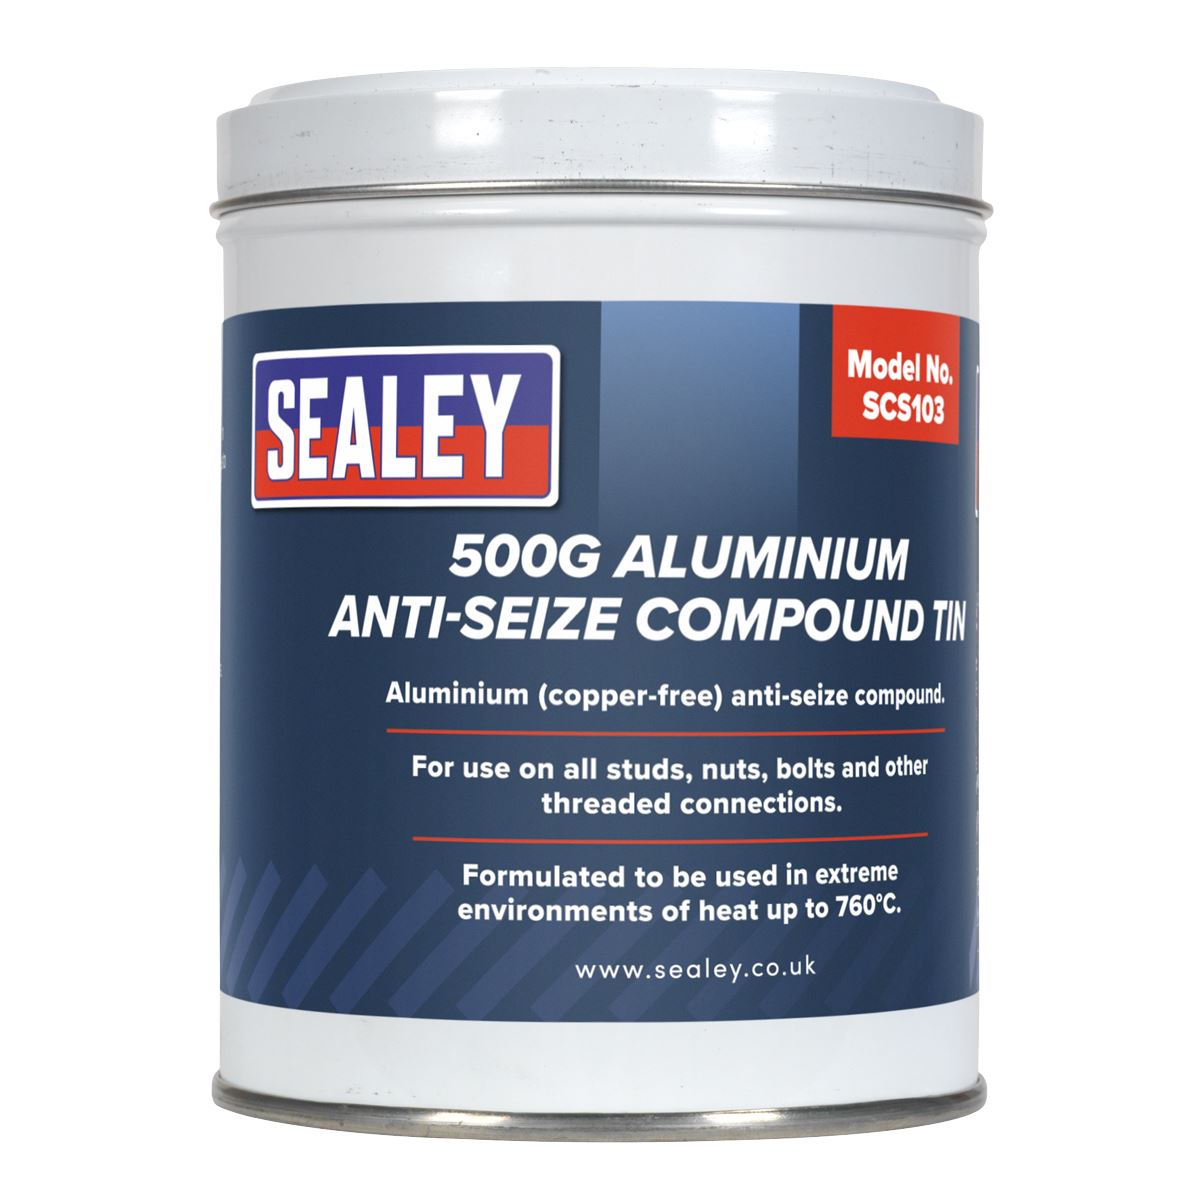 Sealey Aluminium Anti-Seize Compound 500g Tin